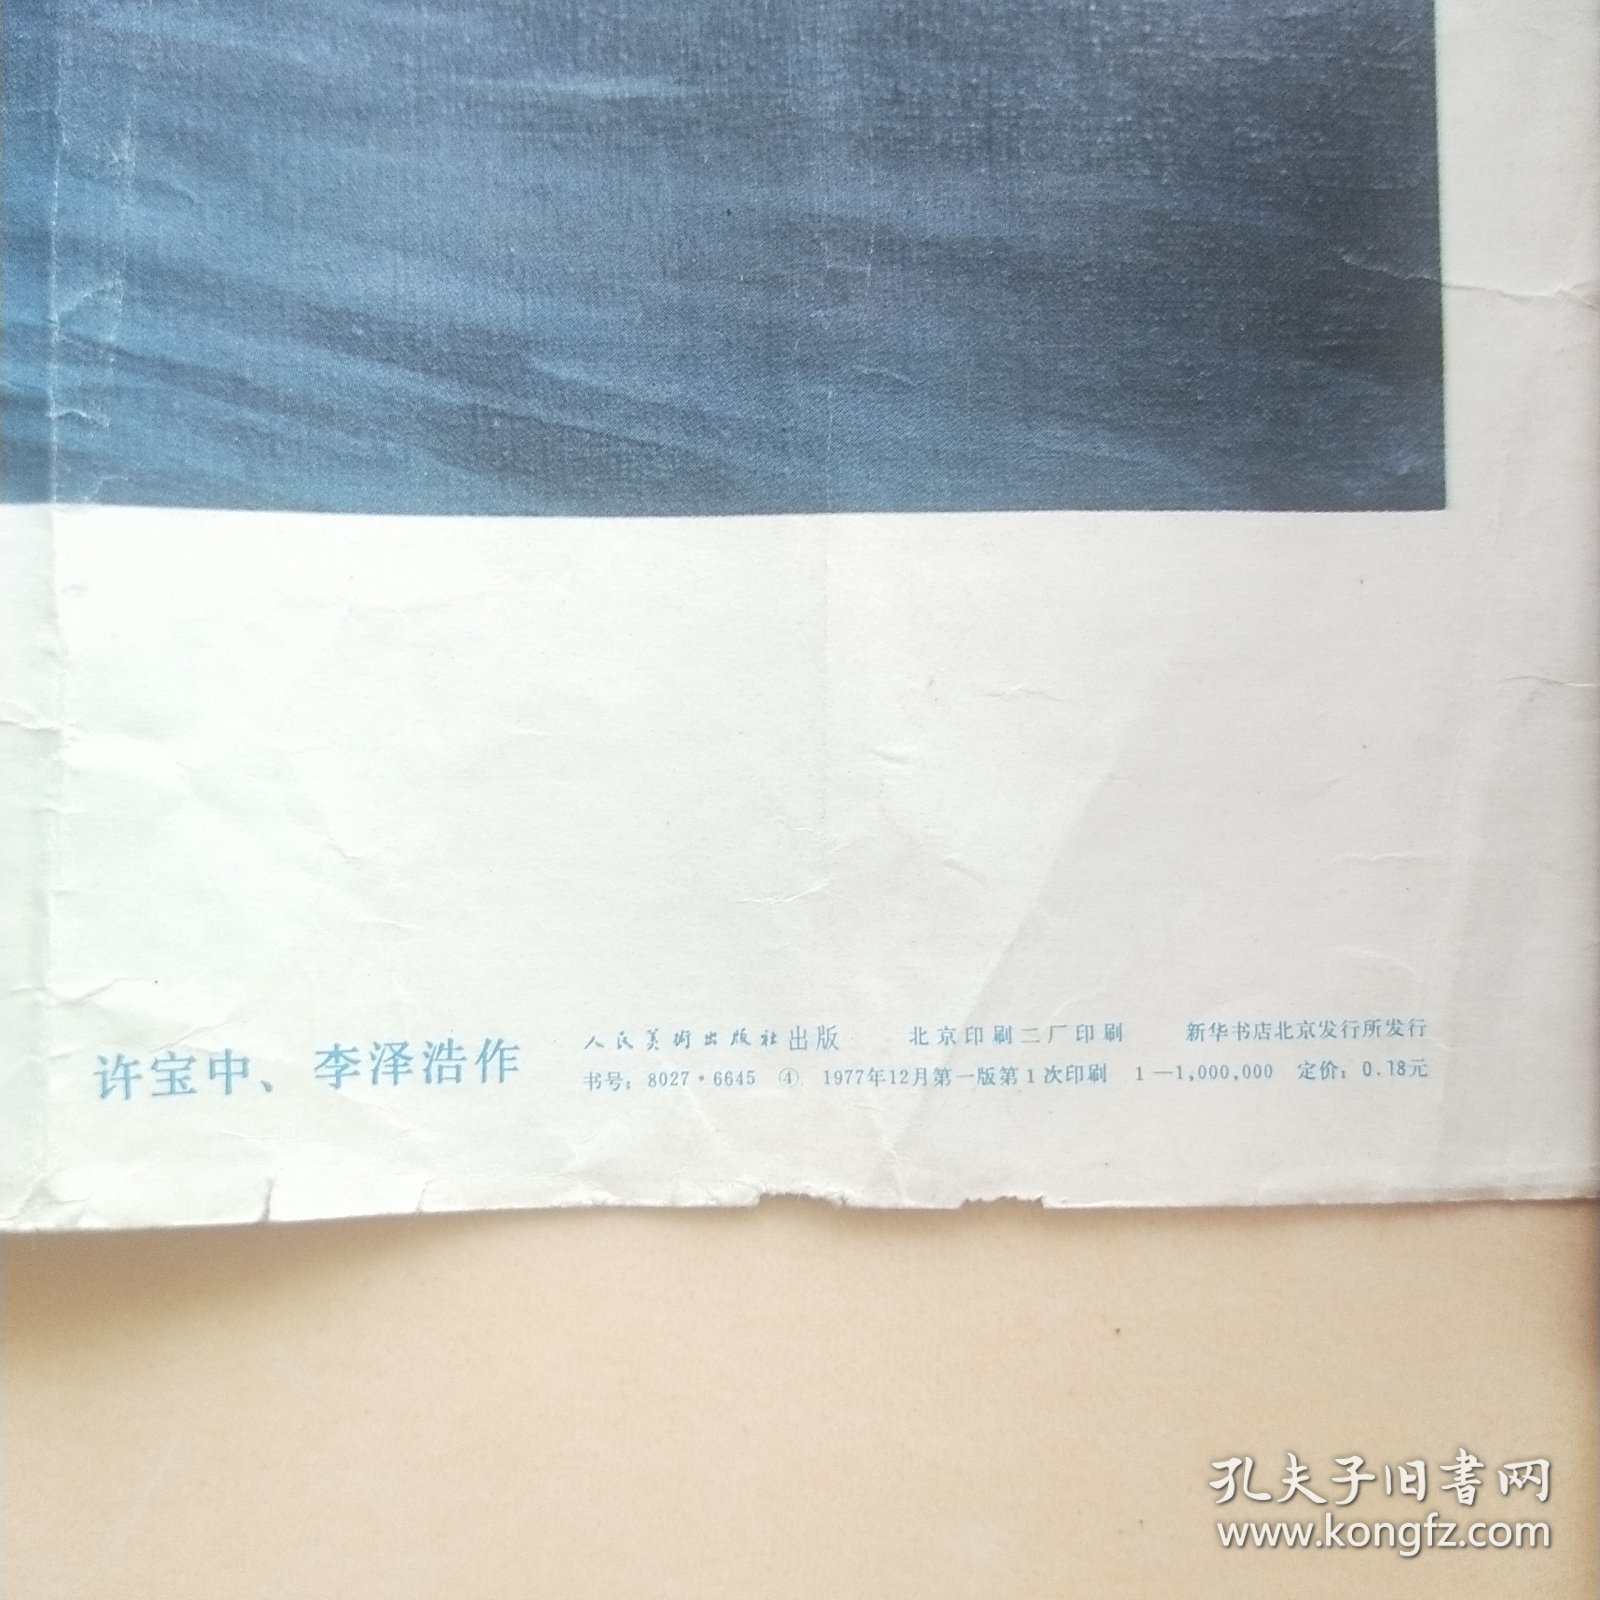 油画 战友 4开本 宣传画 七十年代一版一印 活页 年画 红色 收藏 毛泽东和杨开慧